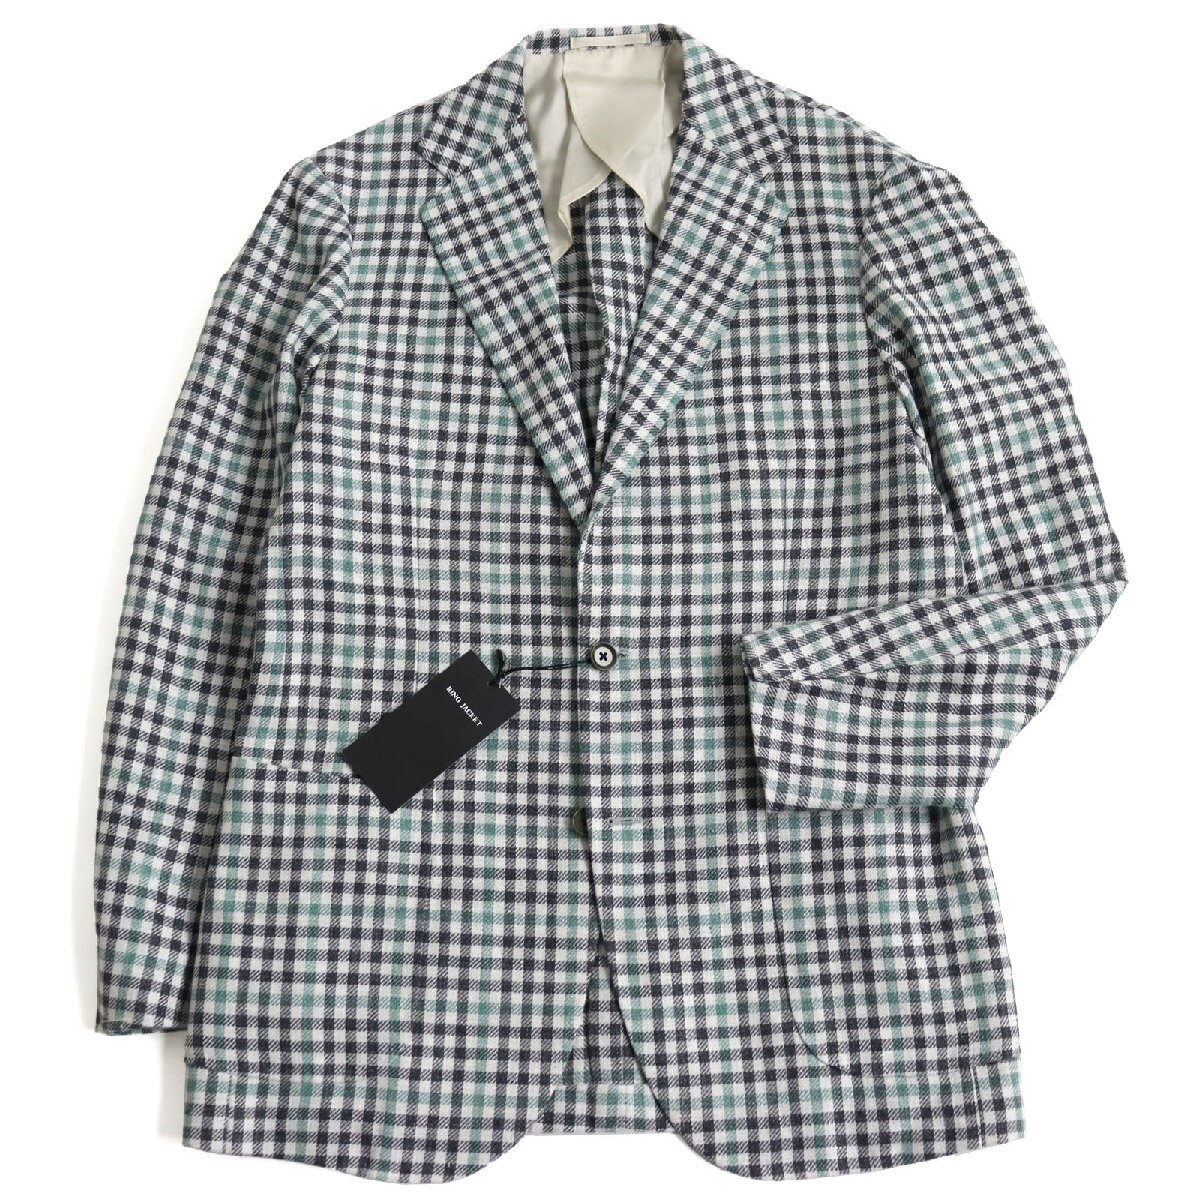 【ドンドン見直し】未使用品 リングジャケット リネン60% シングル テーラードジャケット グレー系 チェック柄 50 日本製 正規品 メンズ